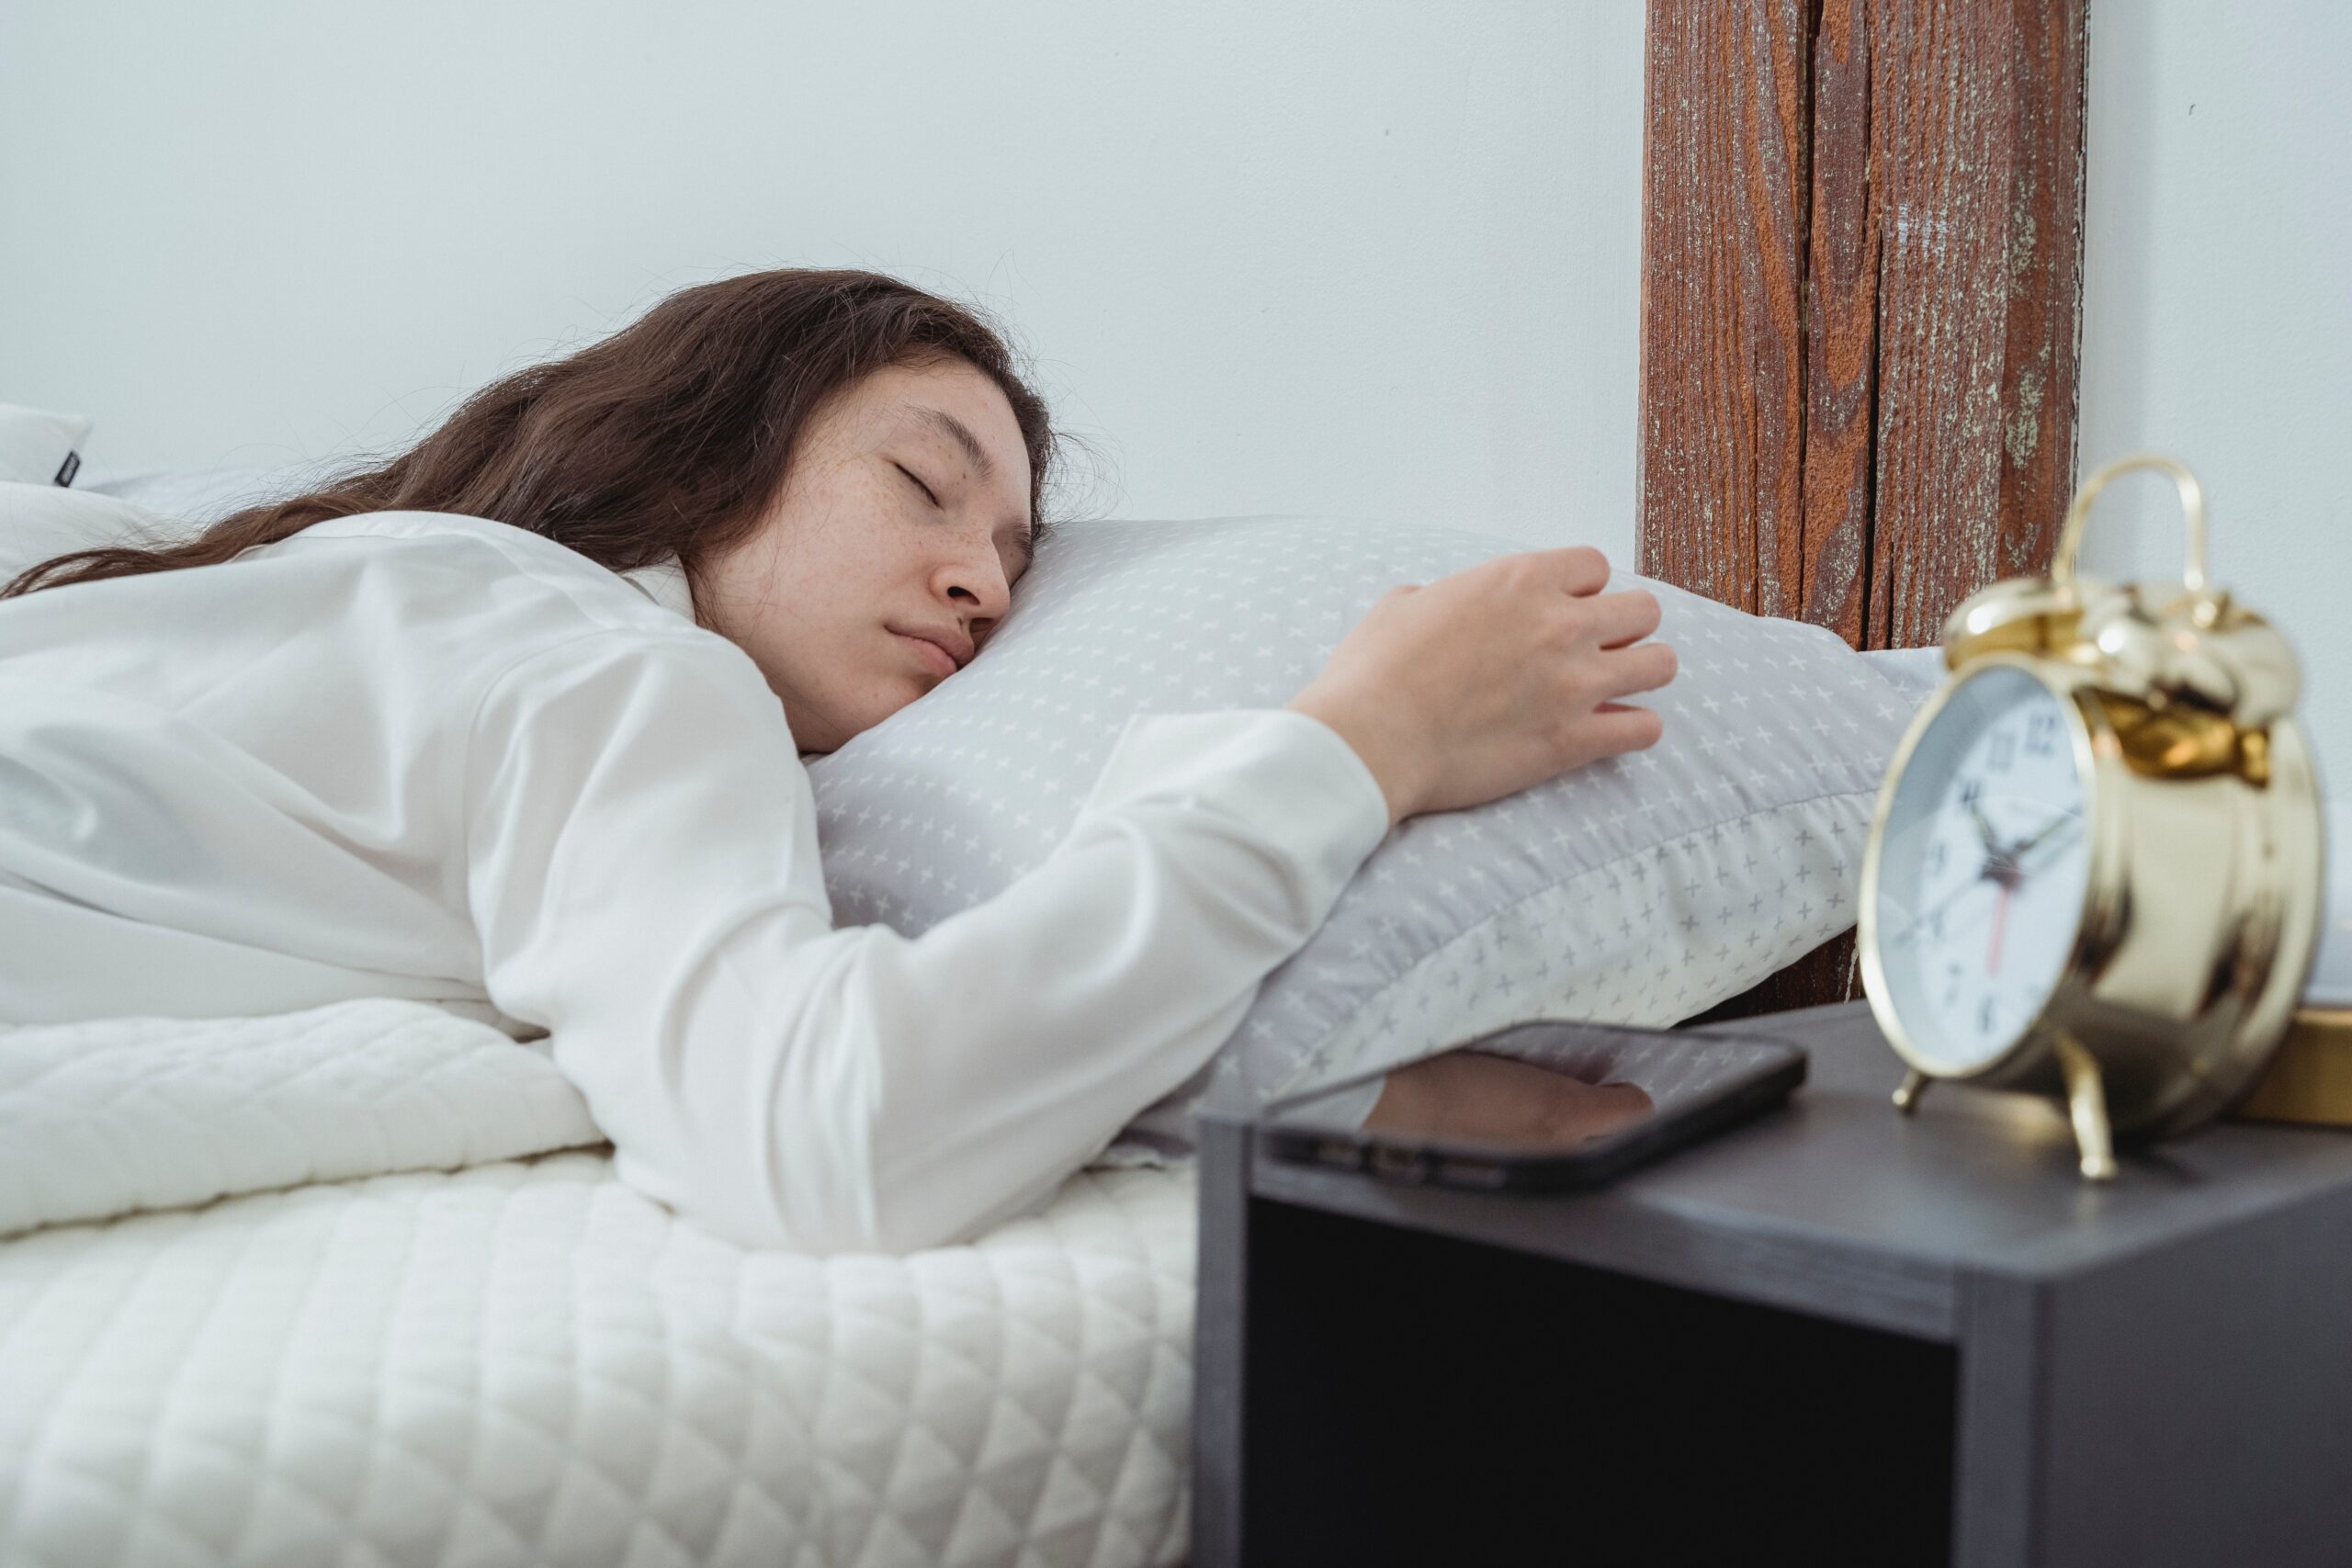 Una mujer dormida en la cama junto a su teléfono en la mesita de noche